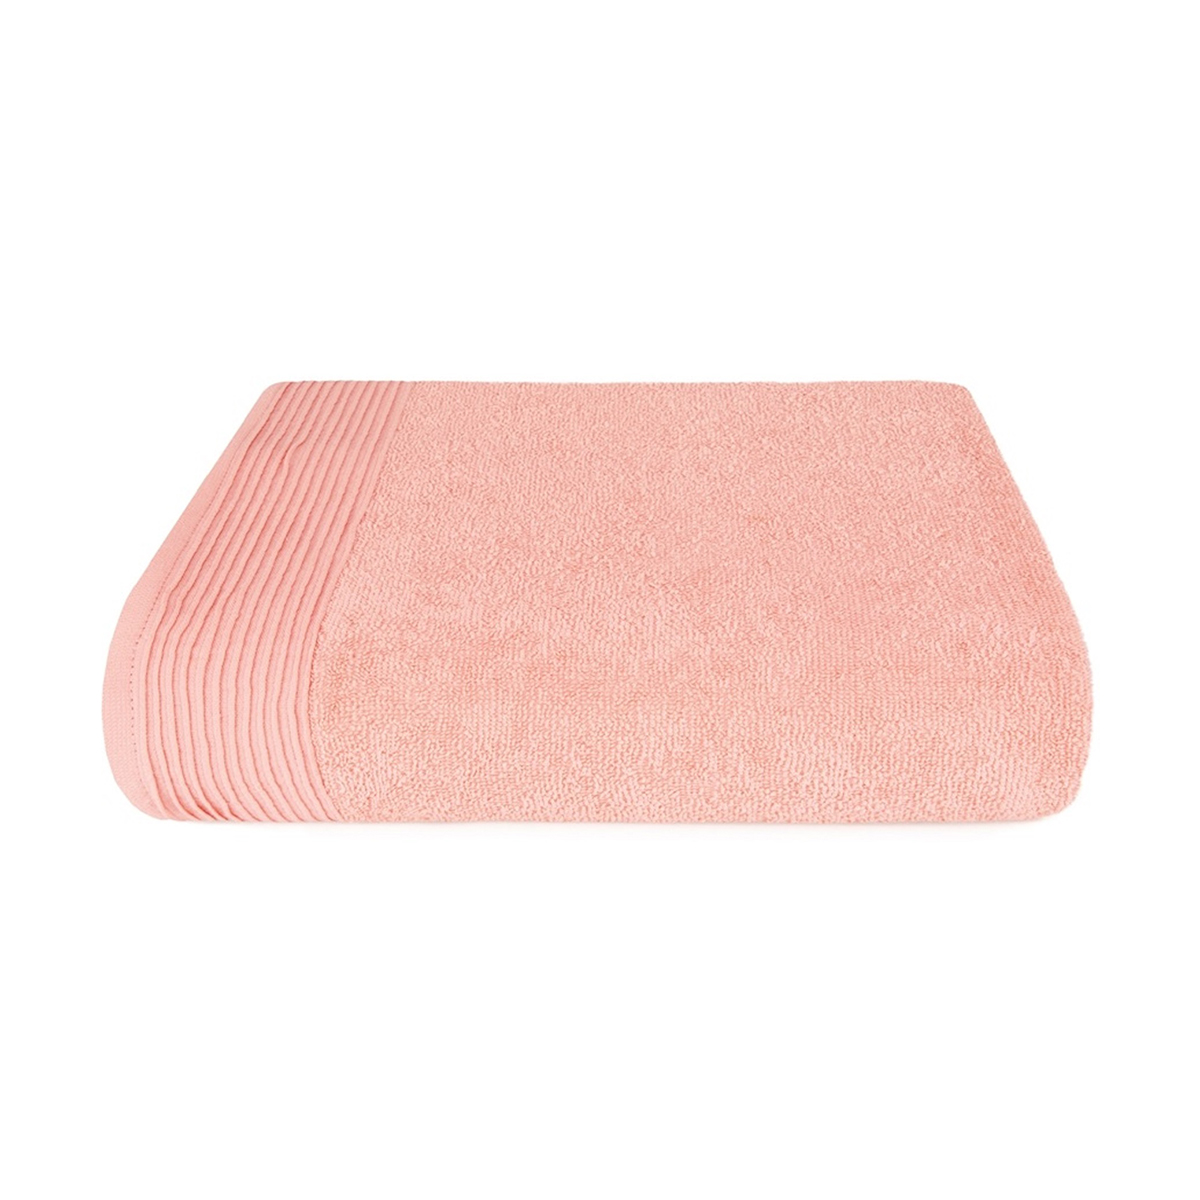 Полотенце "самойловский текстиль" палитра 33*60 см (розово-персиковый)